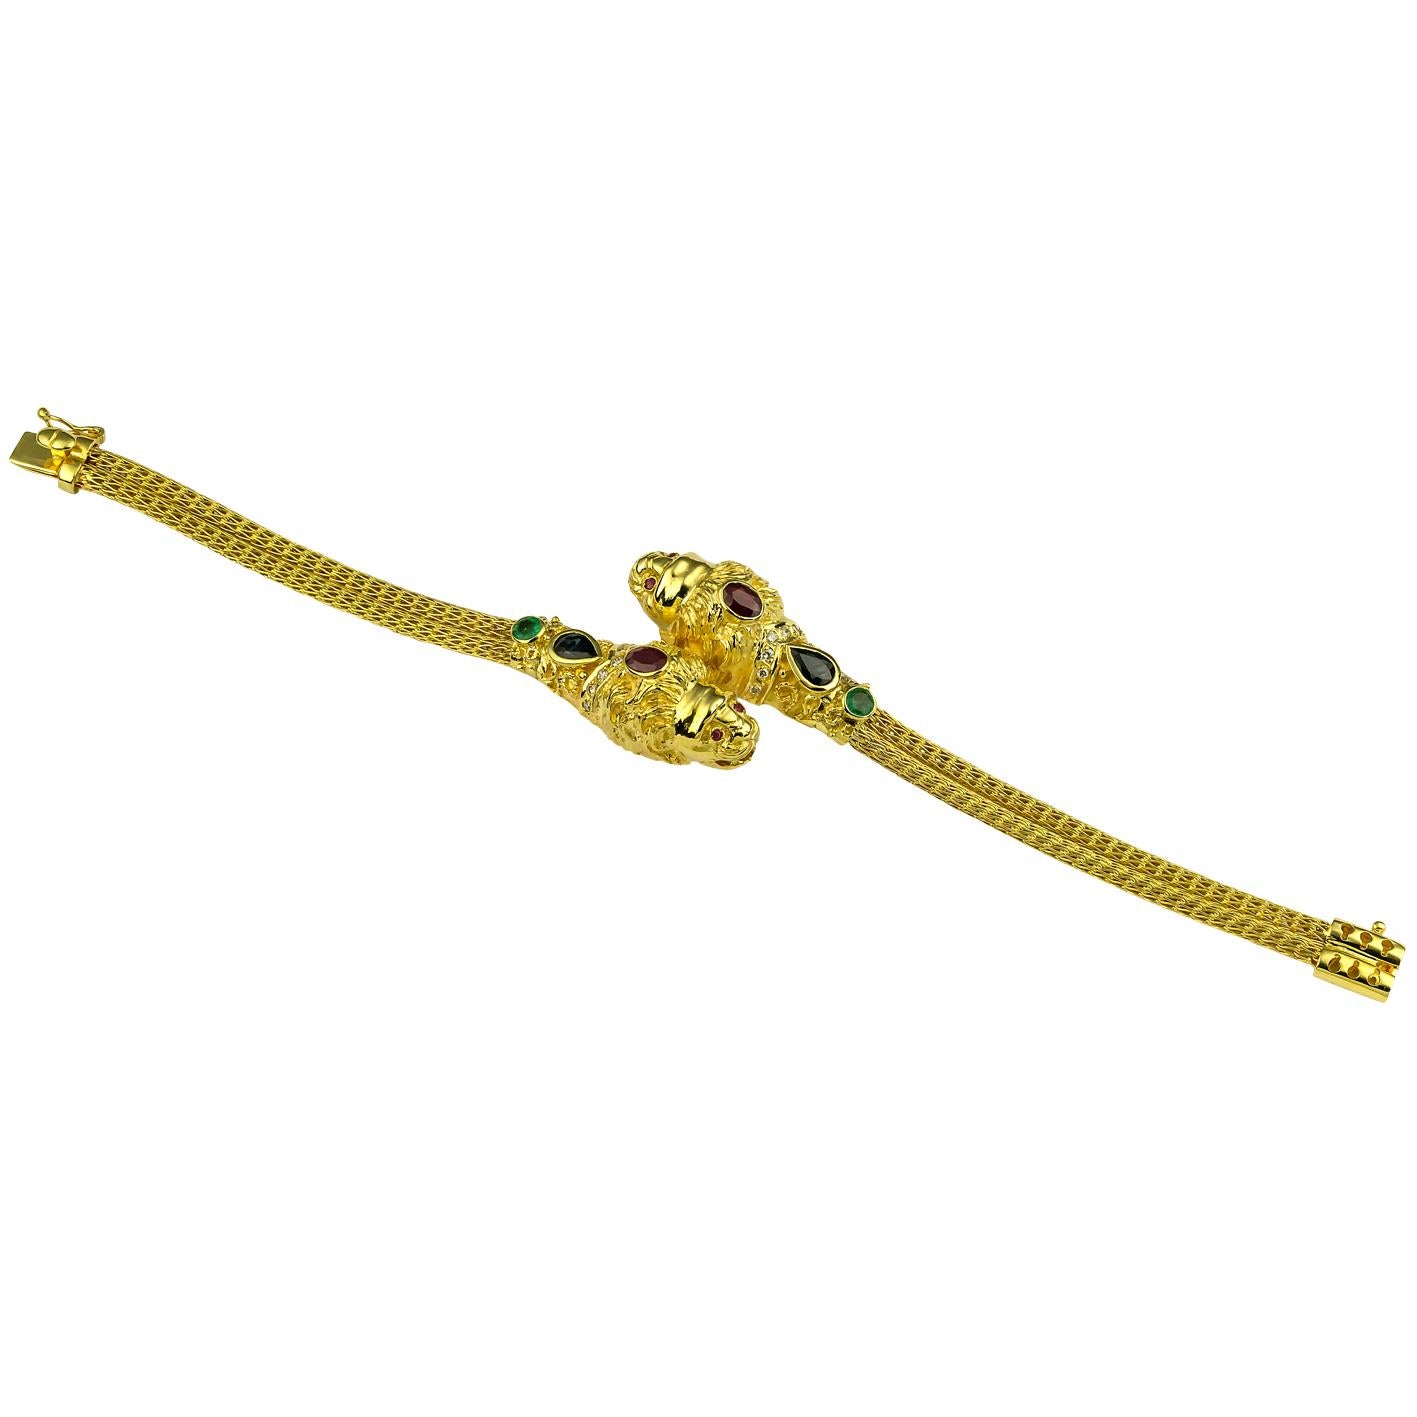 Dieses S.Georgios Doppel-Löwenkopf-Armband mit Diamanten, Rubinen, Saphiren und Smaragden ist aus massivem 18 Karat Gelbgold handgefertigt und mikroskopisch mit granulierten Details verziert. Dieses einzigartige Kunstwerk zeigt zwei Löwenköpfe mit